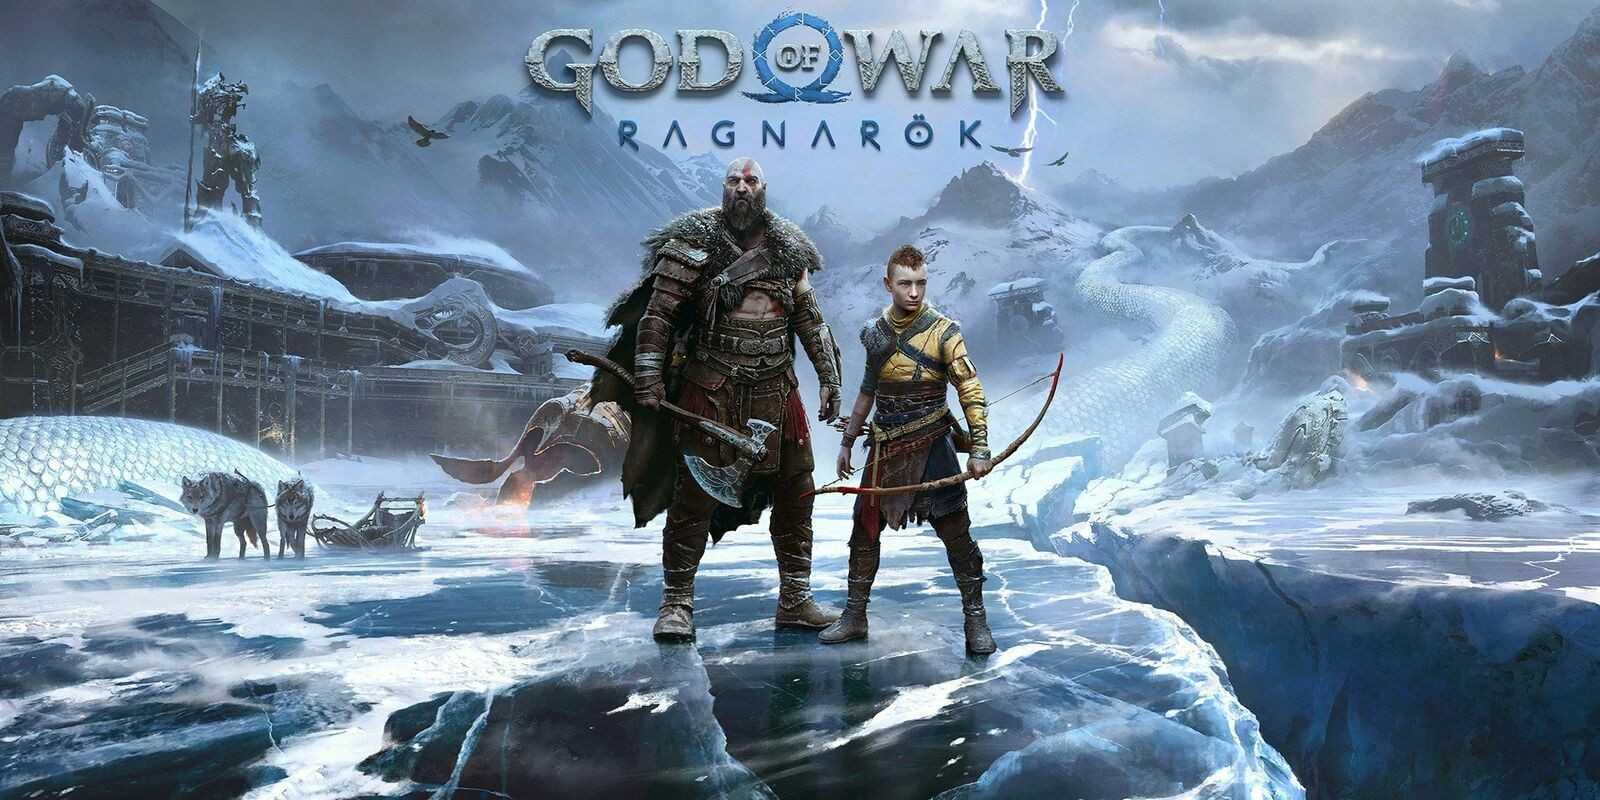 Wynagrodzenie aktora Kratosa Christophera Judge’a może zdenerwować fanów pomimo tego, że God of War: Ragnarok sprzedał się w ponad 11 milionach egzemplarzy na całym świecie